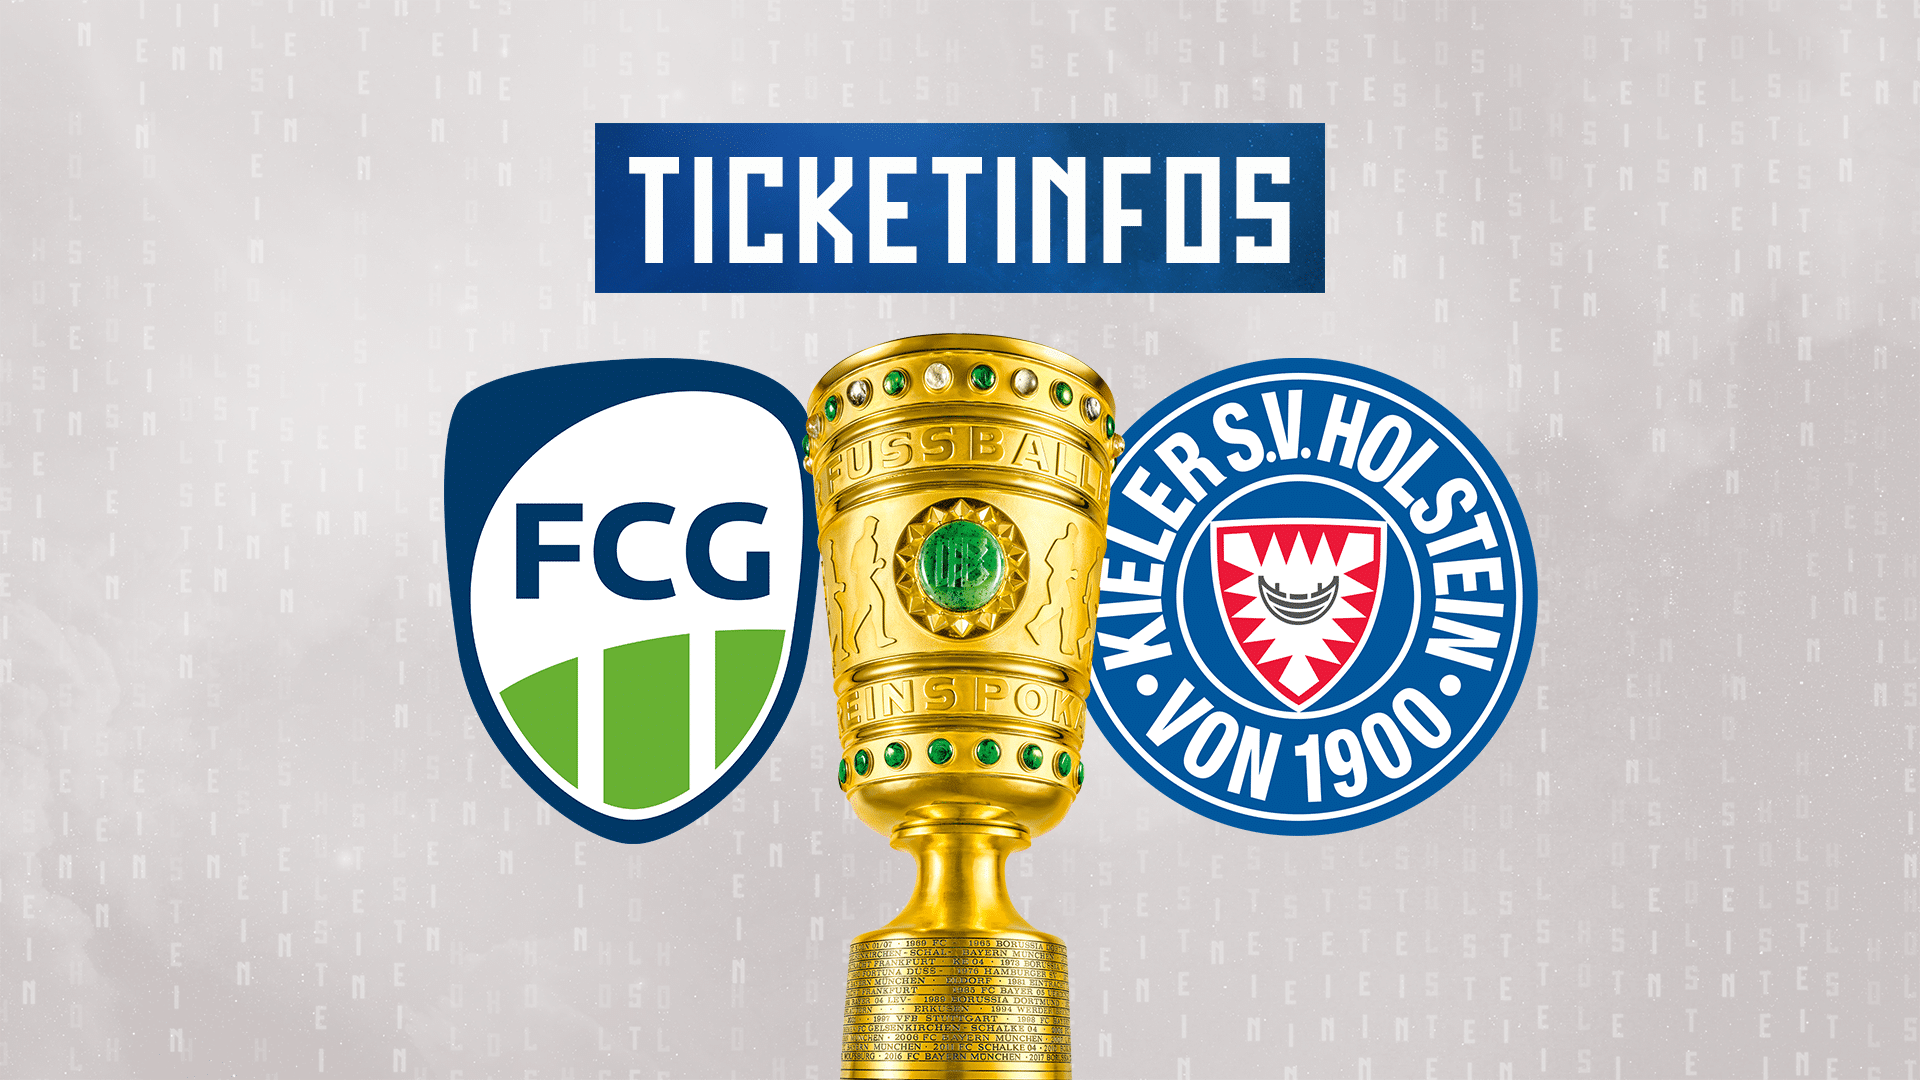 Die erste Runde im DFB-Pokal Tickets für das Spiel beim FC Gütersloh